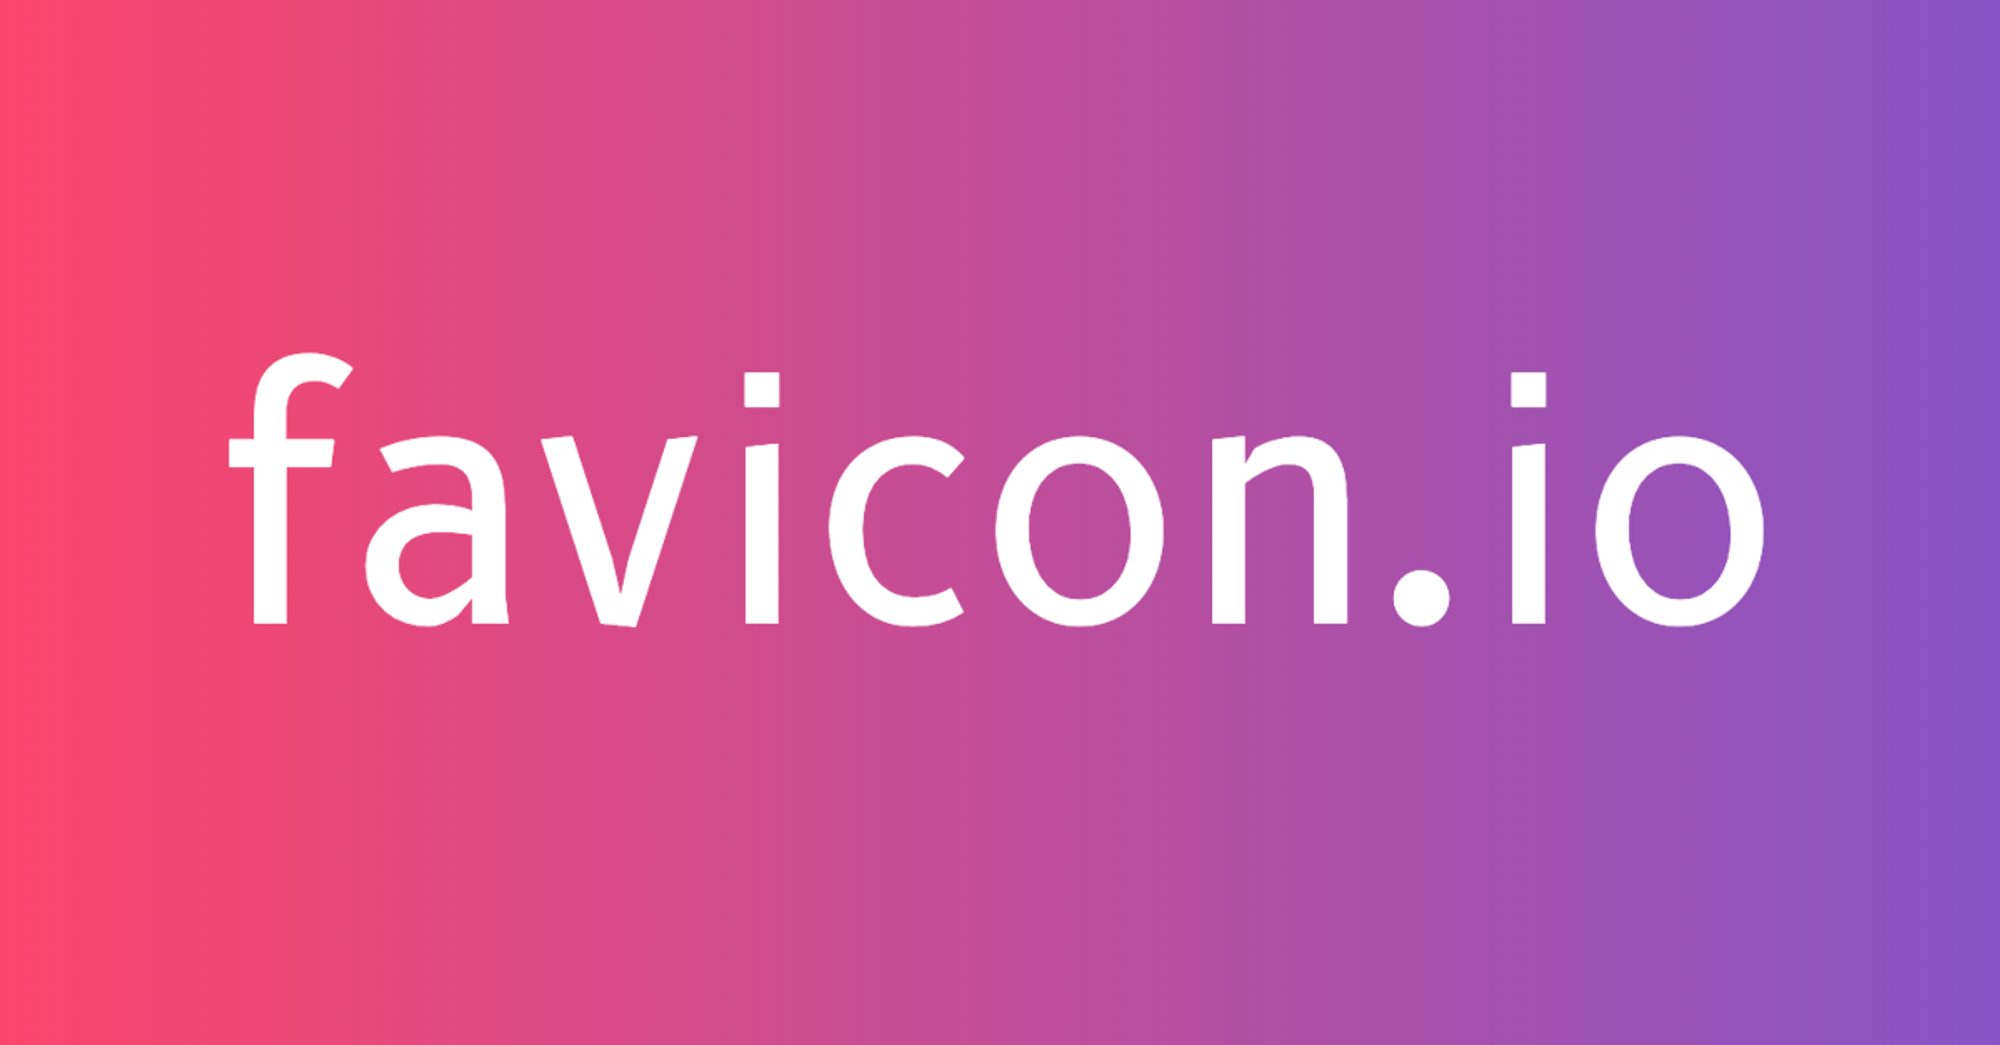 Favicon.io - The Ultimate Favicon Generator (Free)